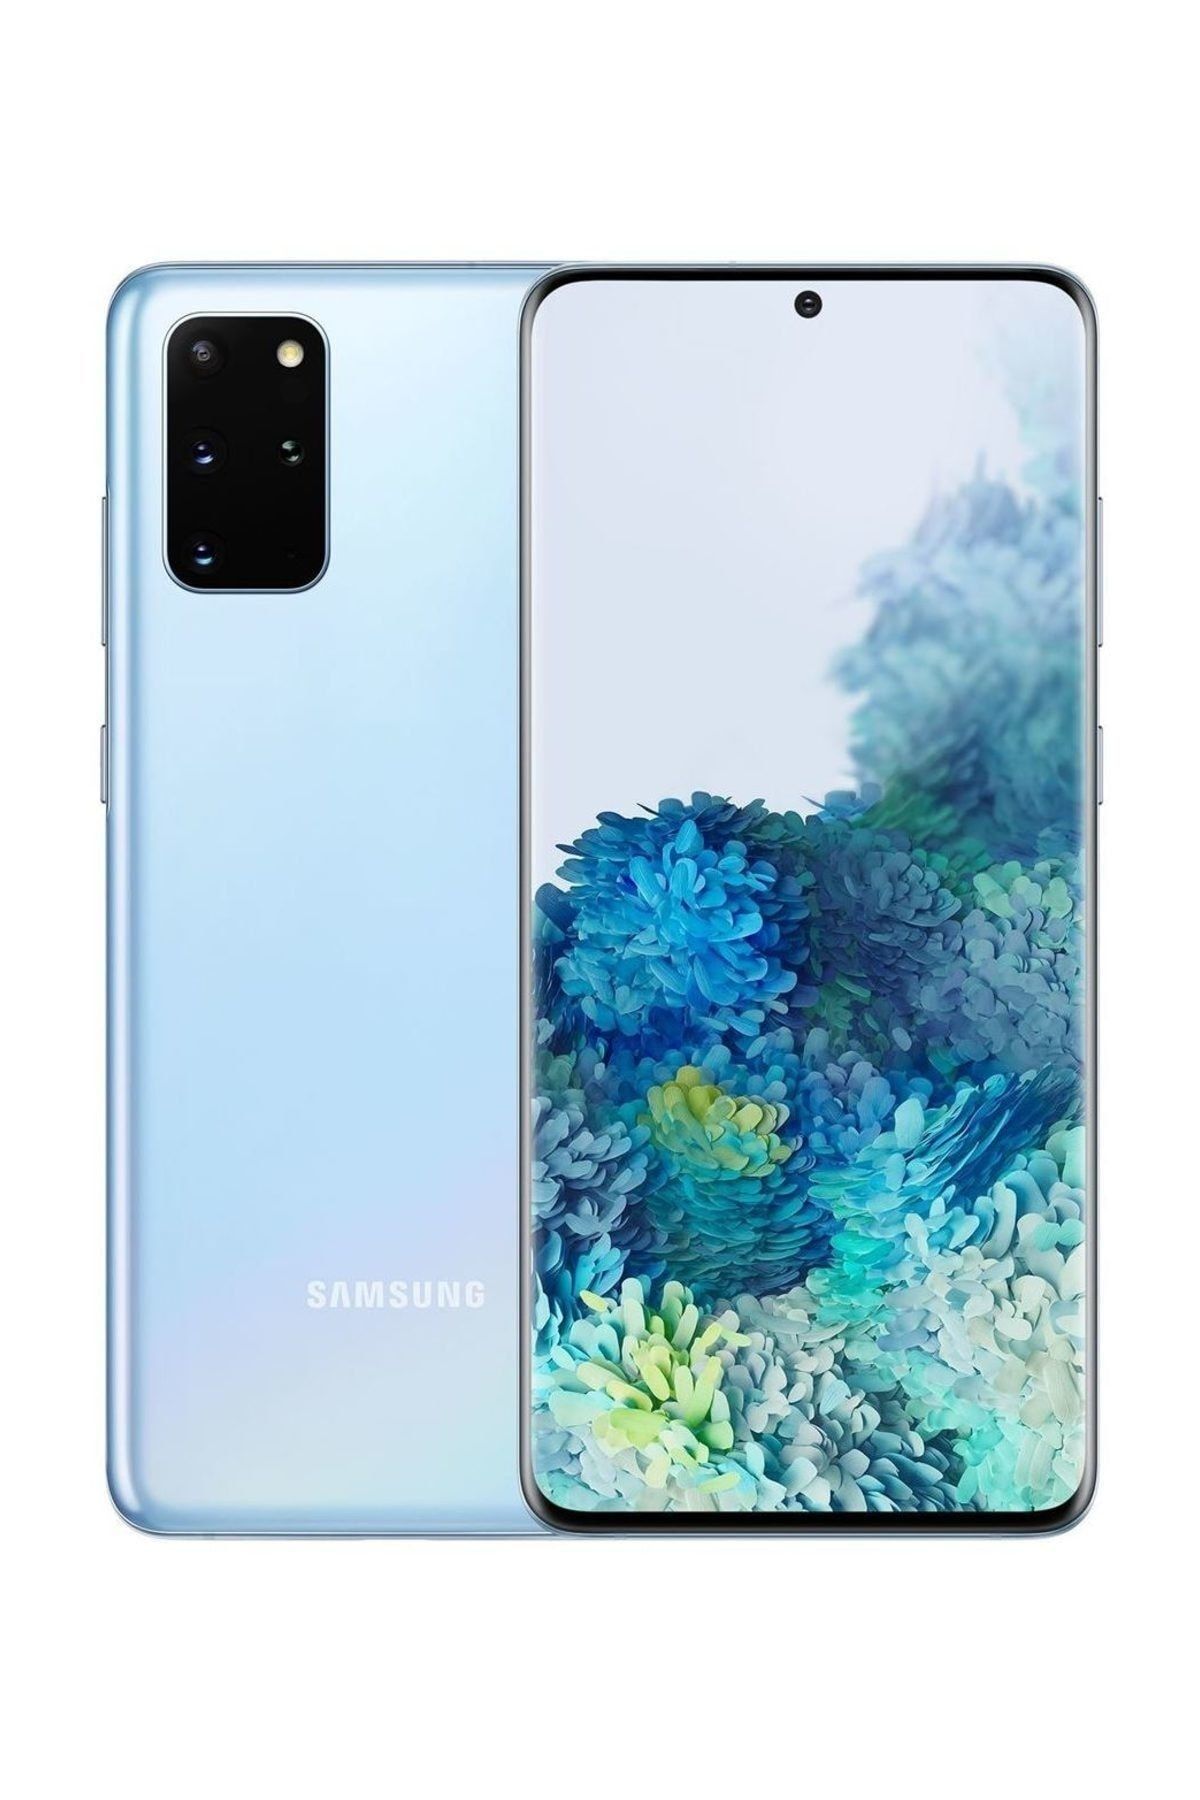 Samsung Yenilenmiş Galaxy S20 Plus Blue 128 GB B Kalite (12 Ay Garantili)